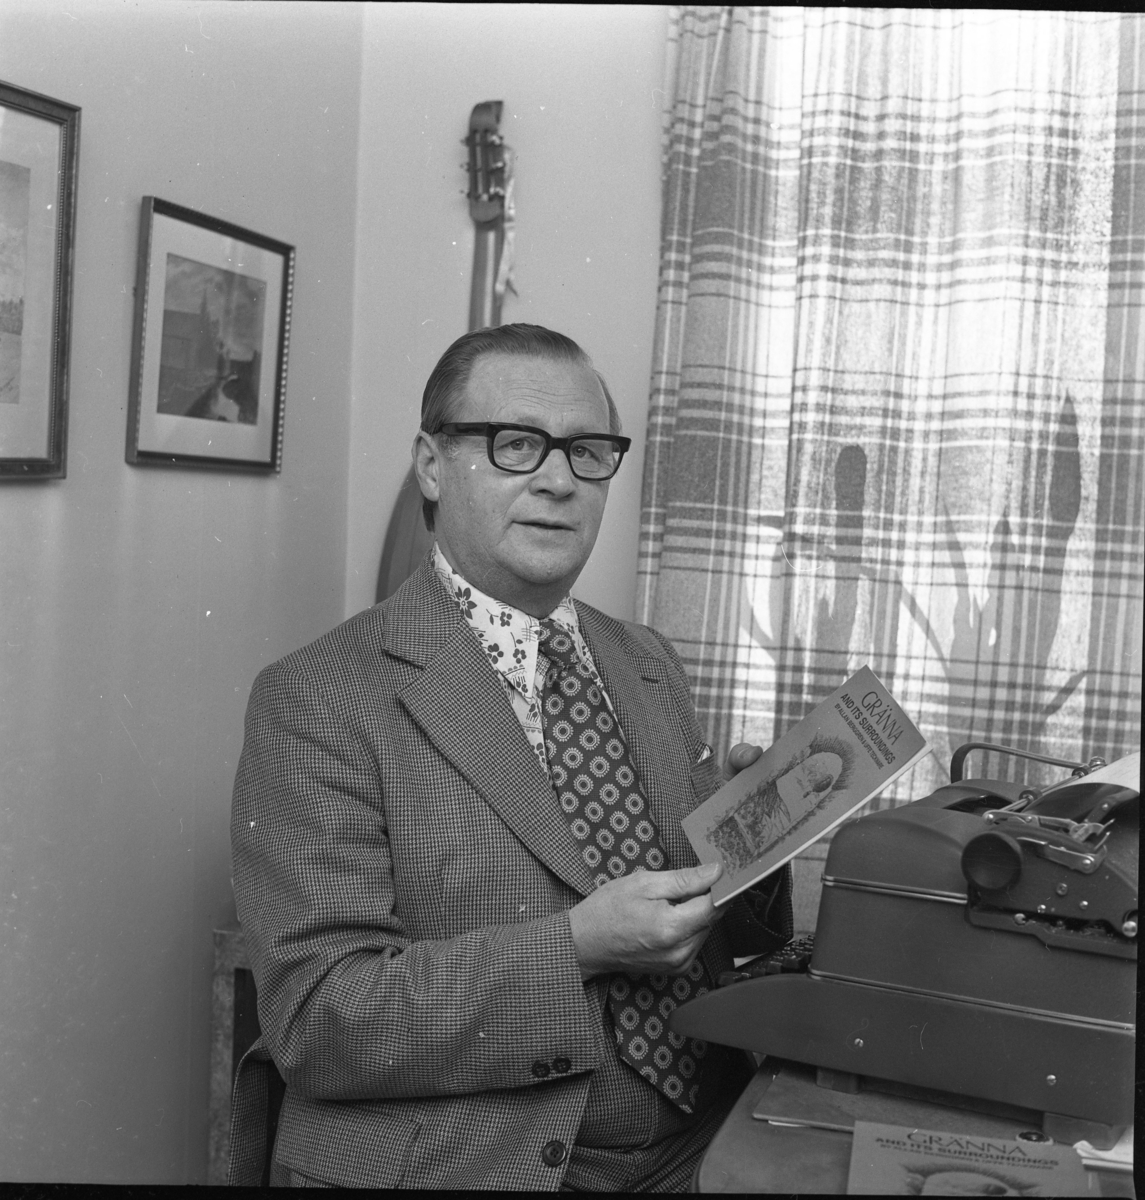 En man i smårutig kostym med prickig slips och blommig skjorta sitter vid ett bord med skrivmaskin och håller upp en skrift: "Gränna and its surroundings." På väggen bakom honom hänger troligen en luta.